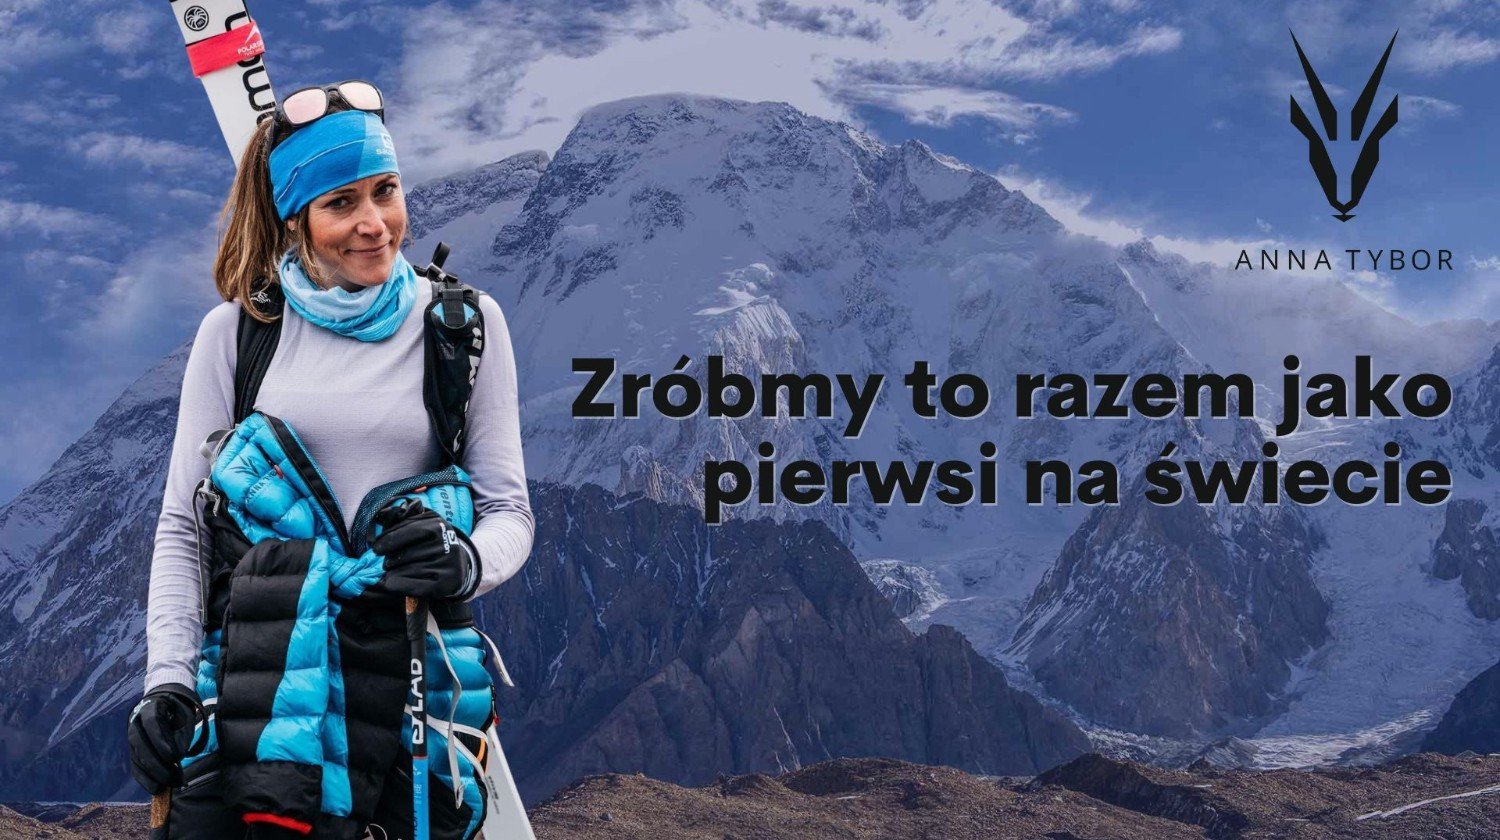 Nữ vận động viên leo núi nổi tiếng của Ba Lan Anna Tybor. Ảnh : Facebook nhân vật